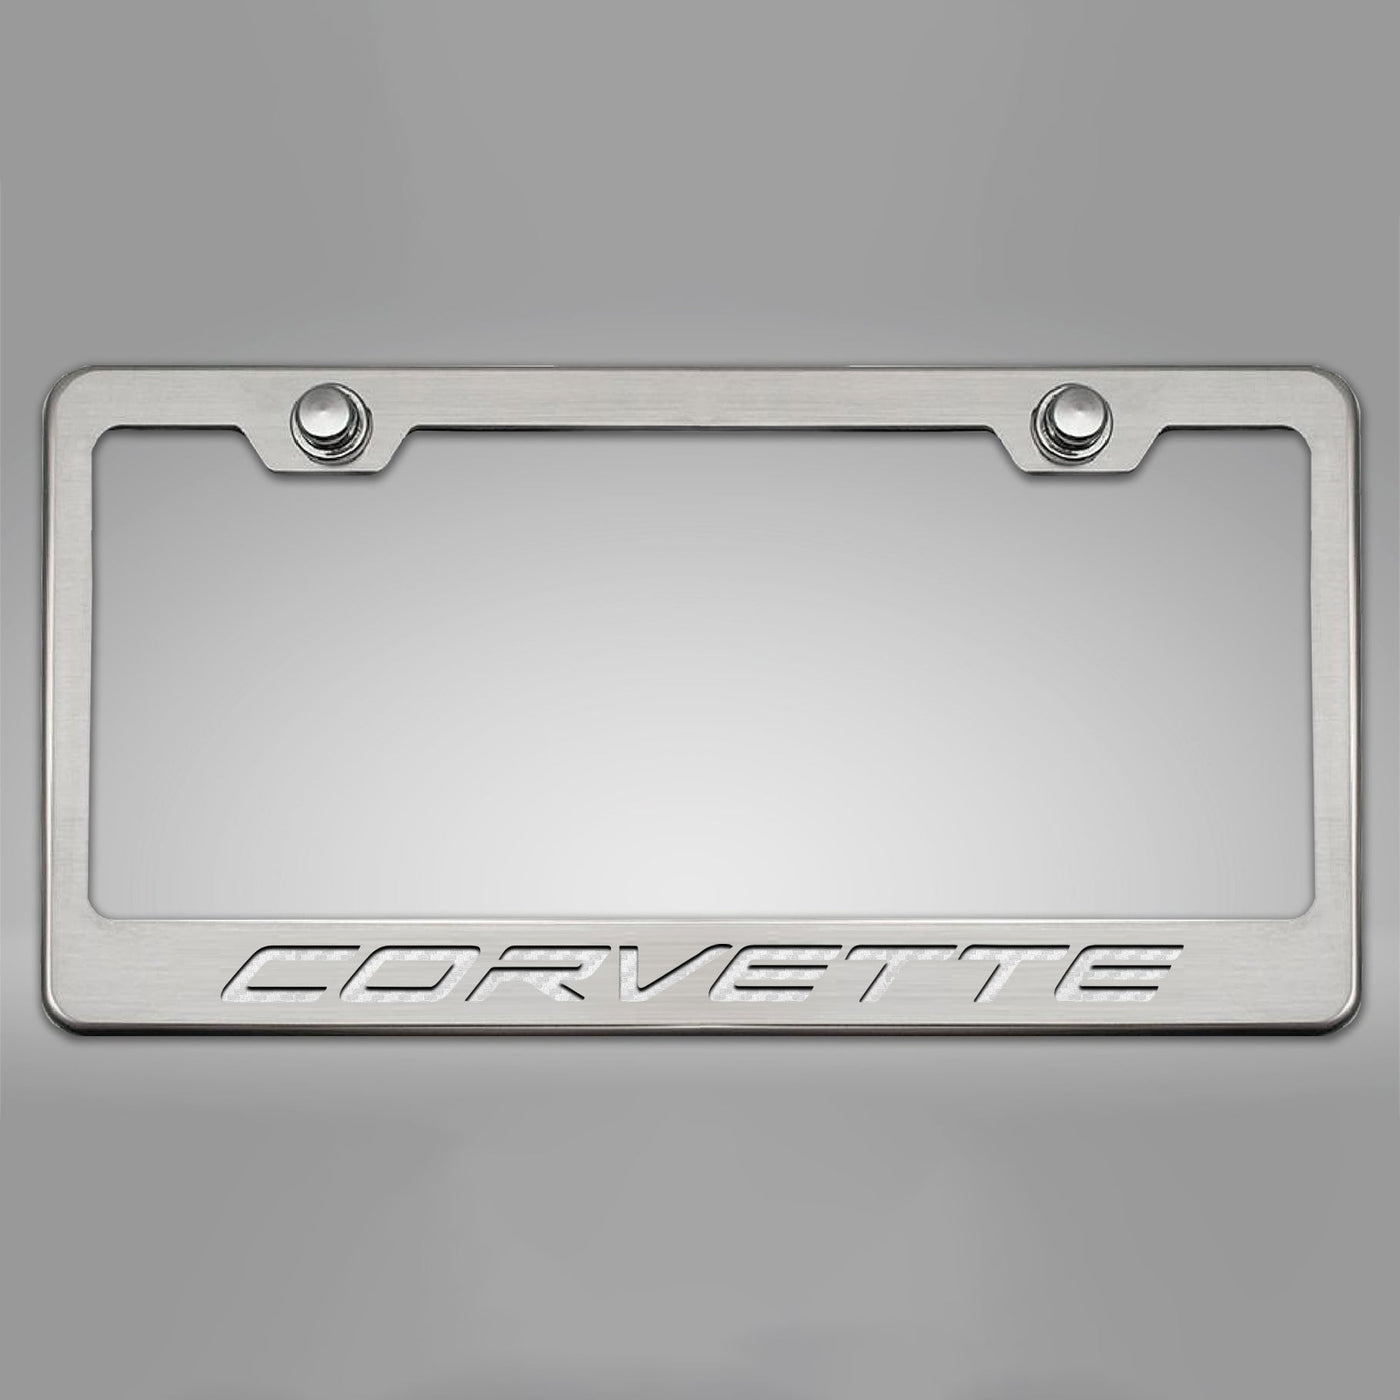 2020-2024 C8 Corvette - CORVETTE Style License Plate Frame - Brushed Stainless